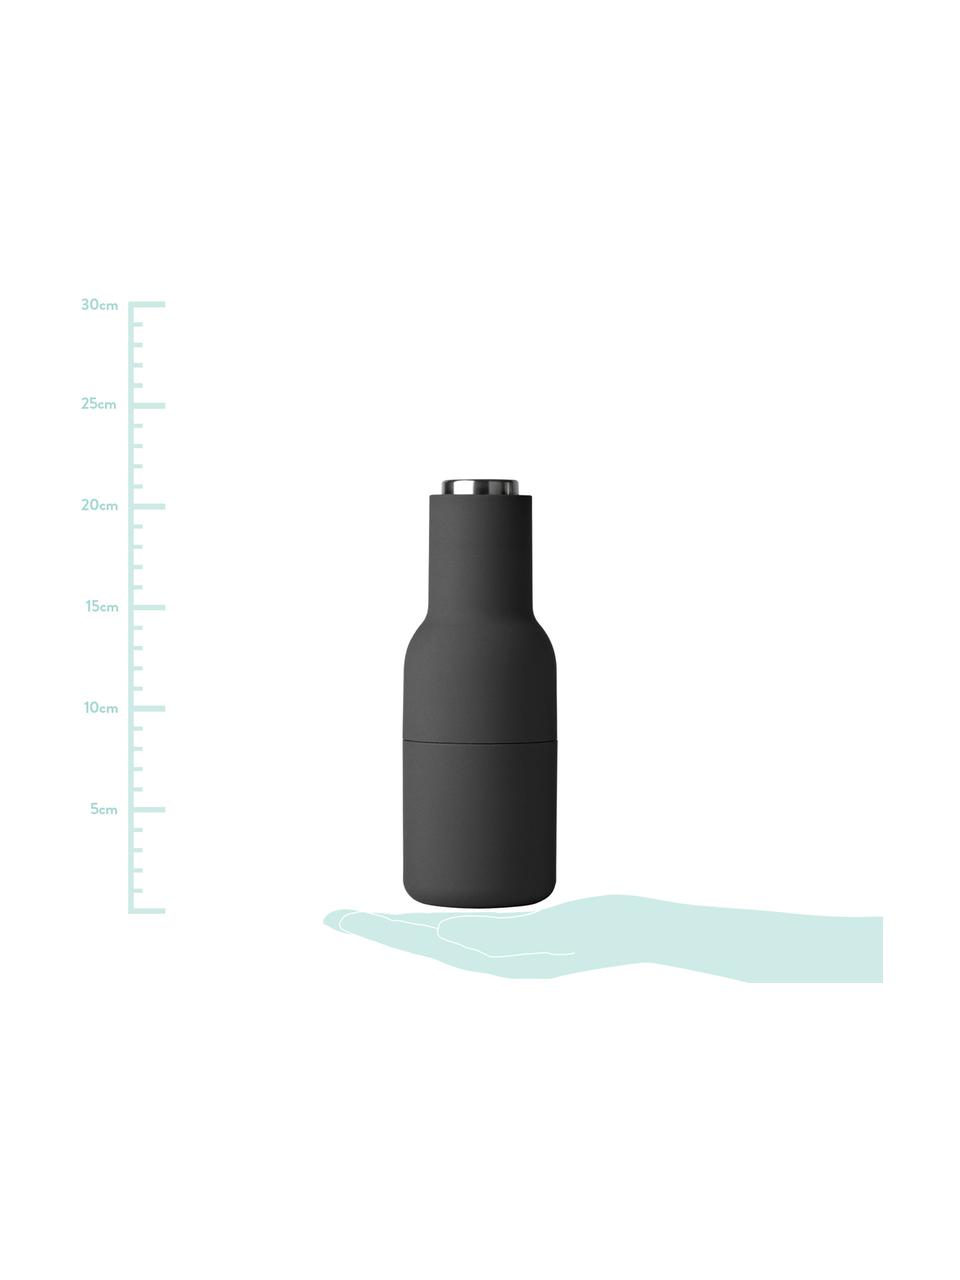 Sada mlýnků Bottle Grinder, 2 díly, Antracitová, světle šedá, Ø 8 cm, V 21 cm